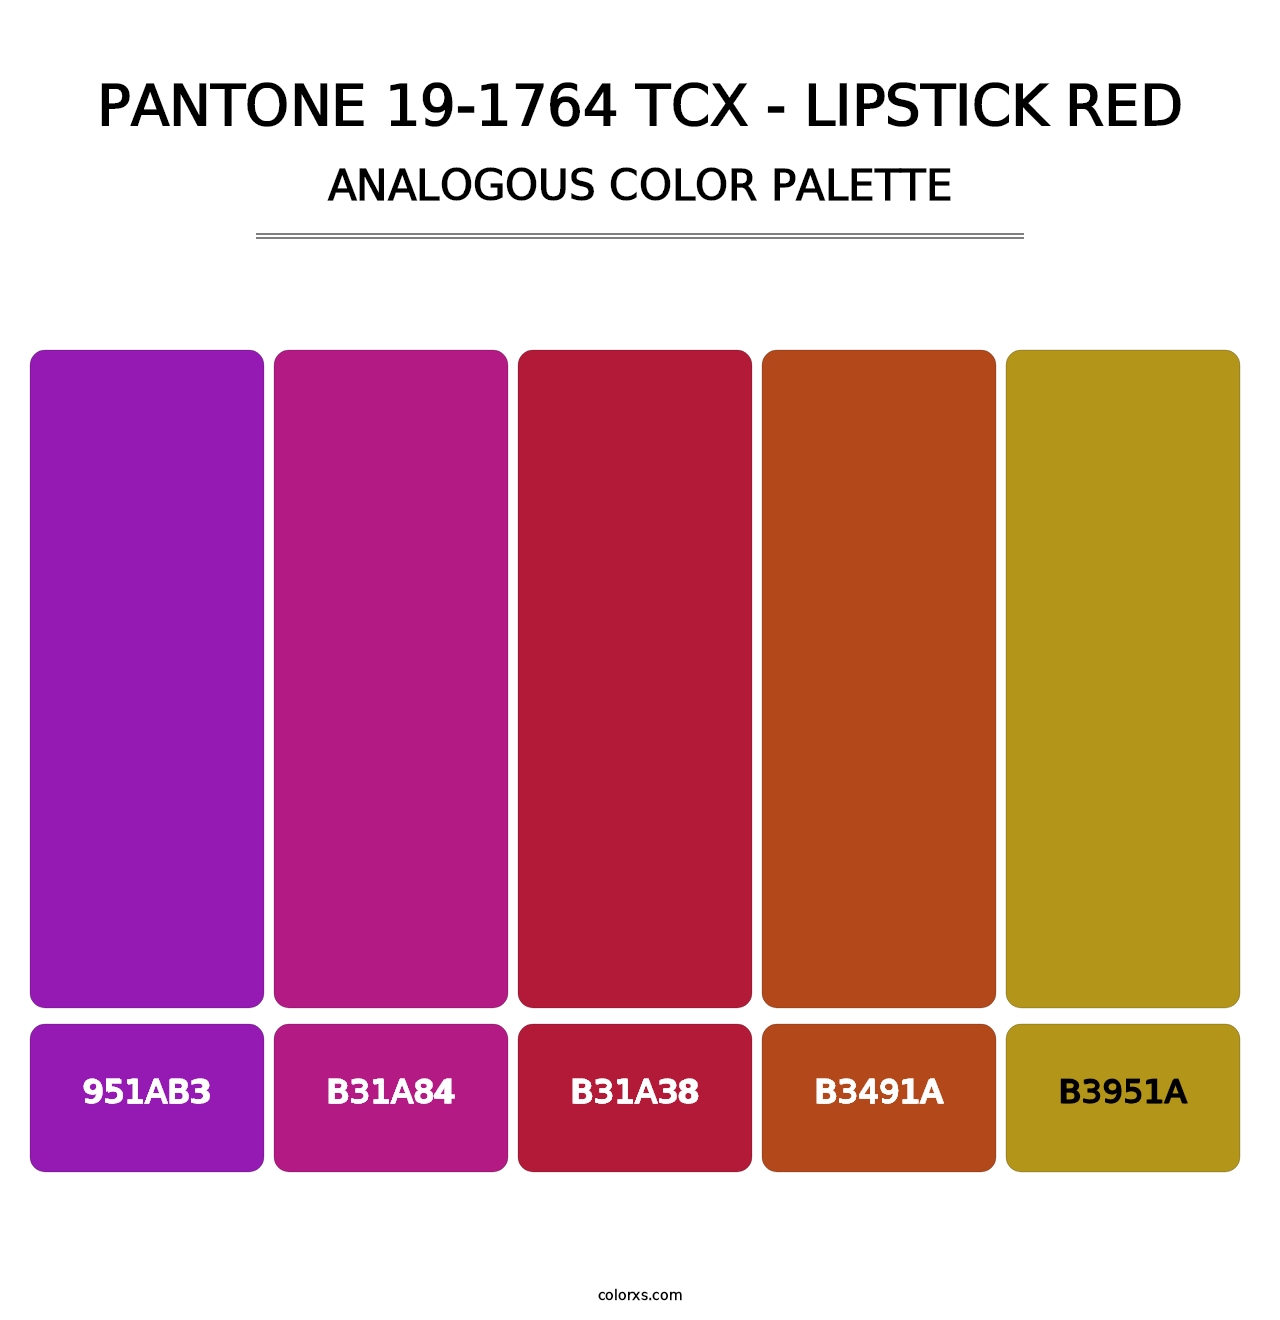 PANTONE 19-1764 TCX - Lipstick Red - Analogous Color Palette